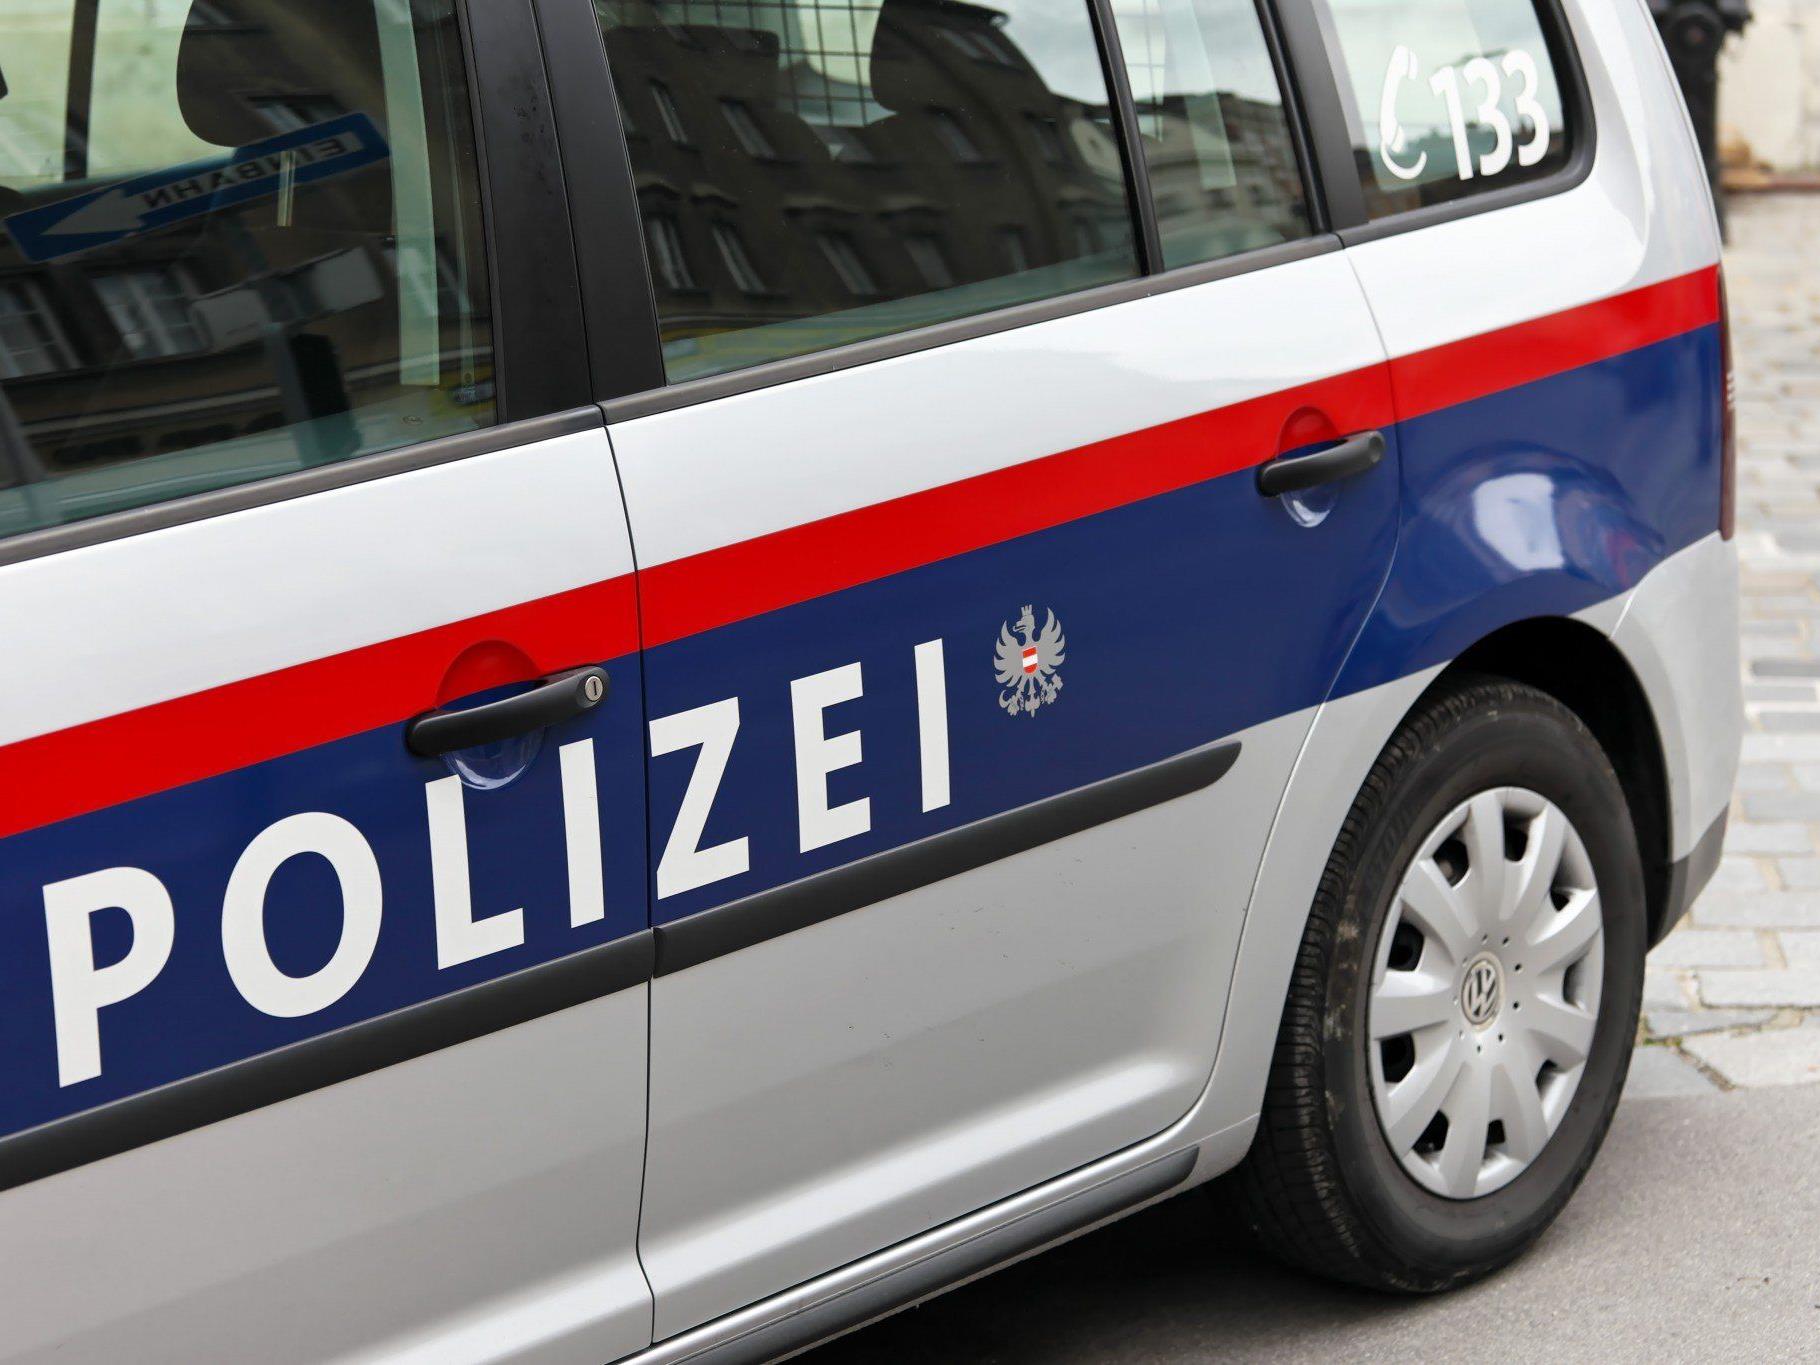 17-Jährige erstattete nach Rückkehr aus Kroatien Anzeige - 50-Jähriger wurde festgenommen.